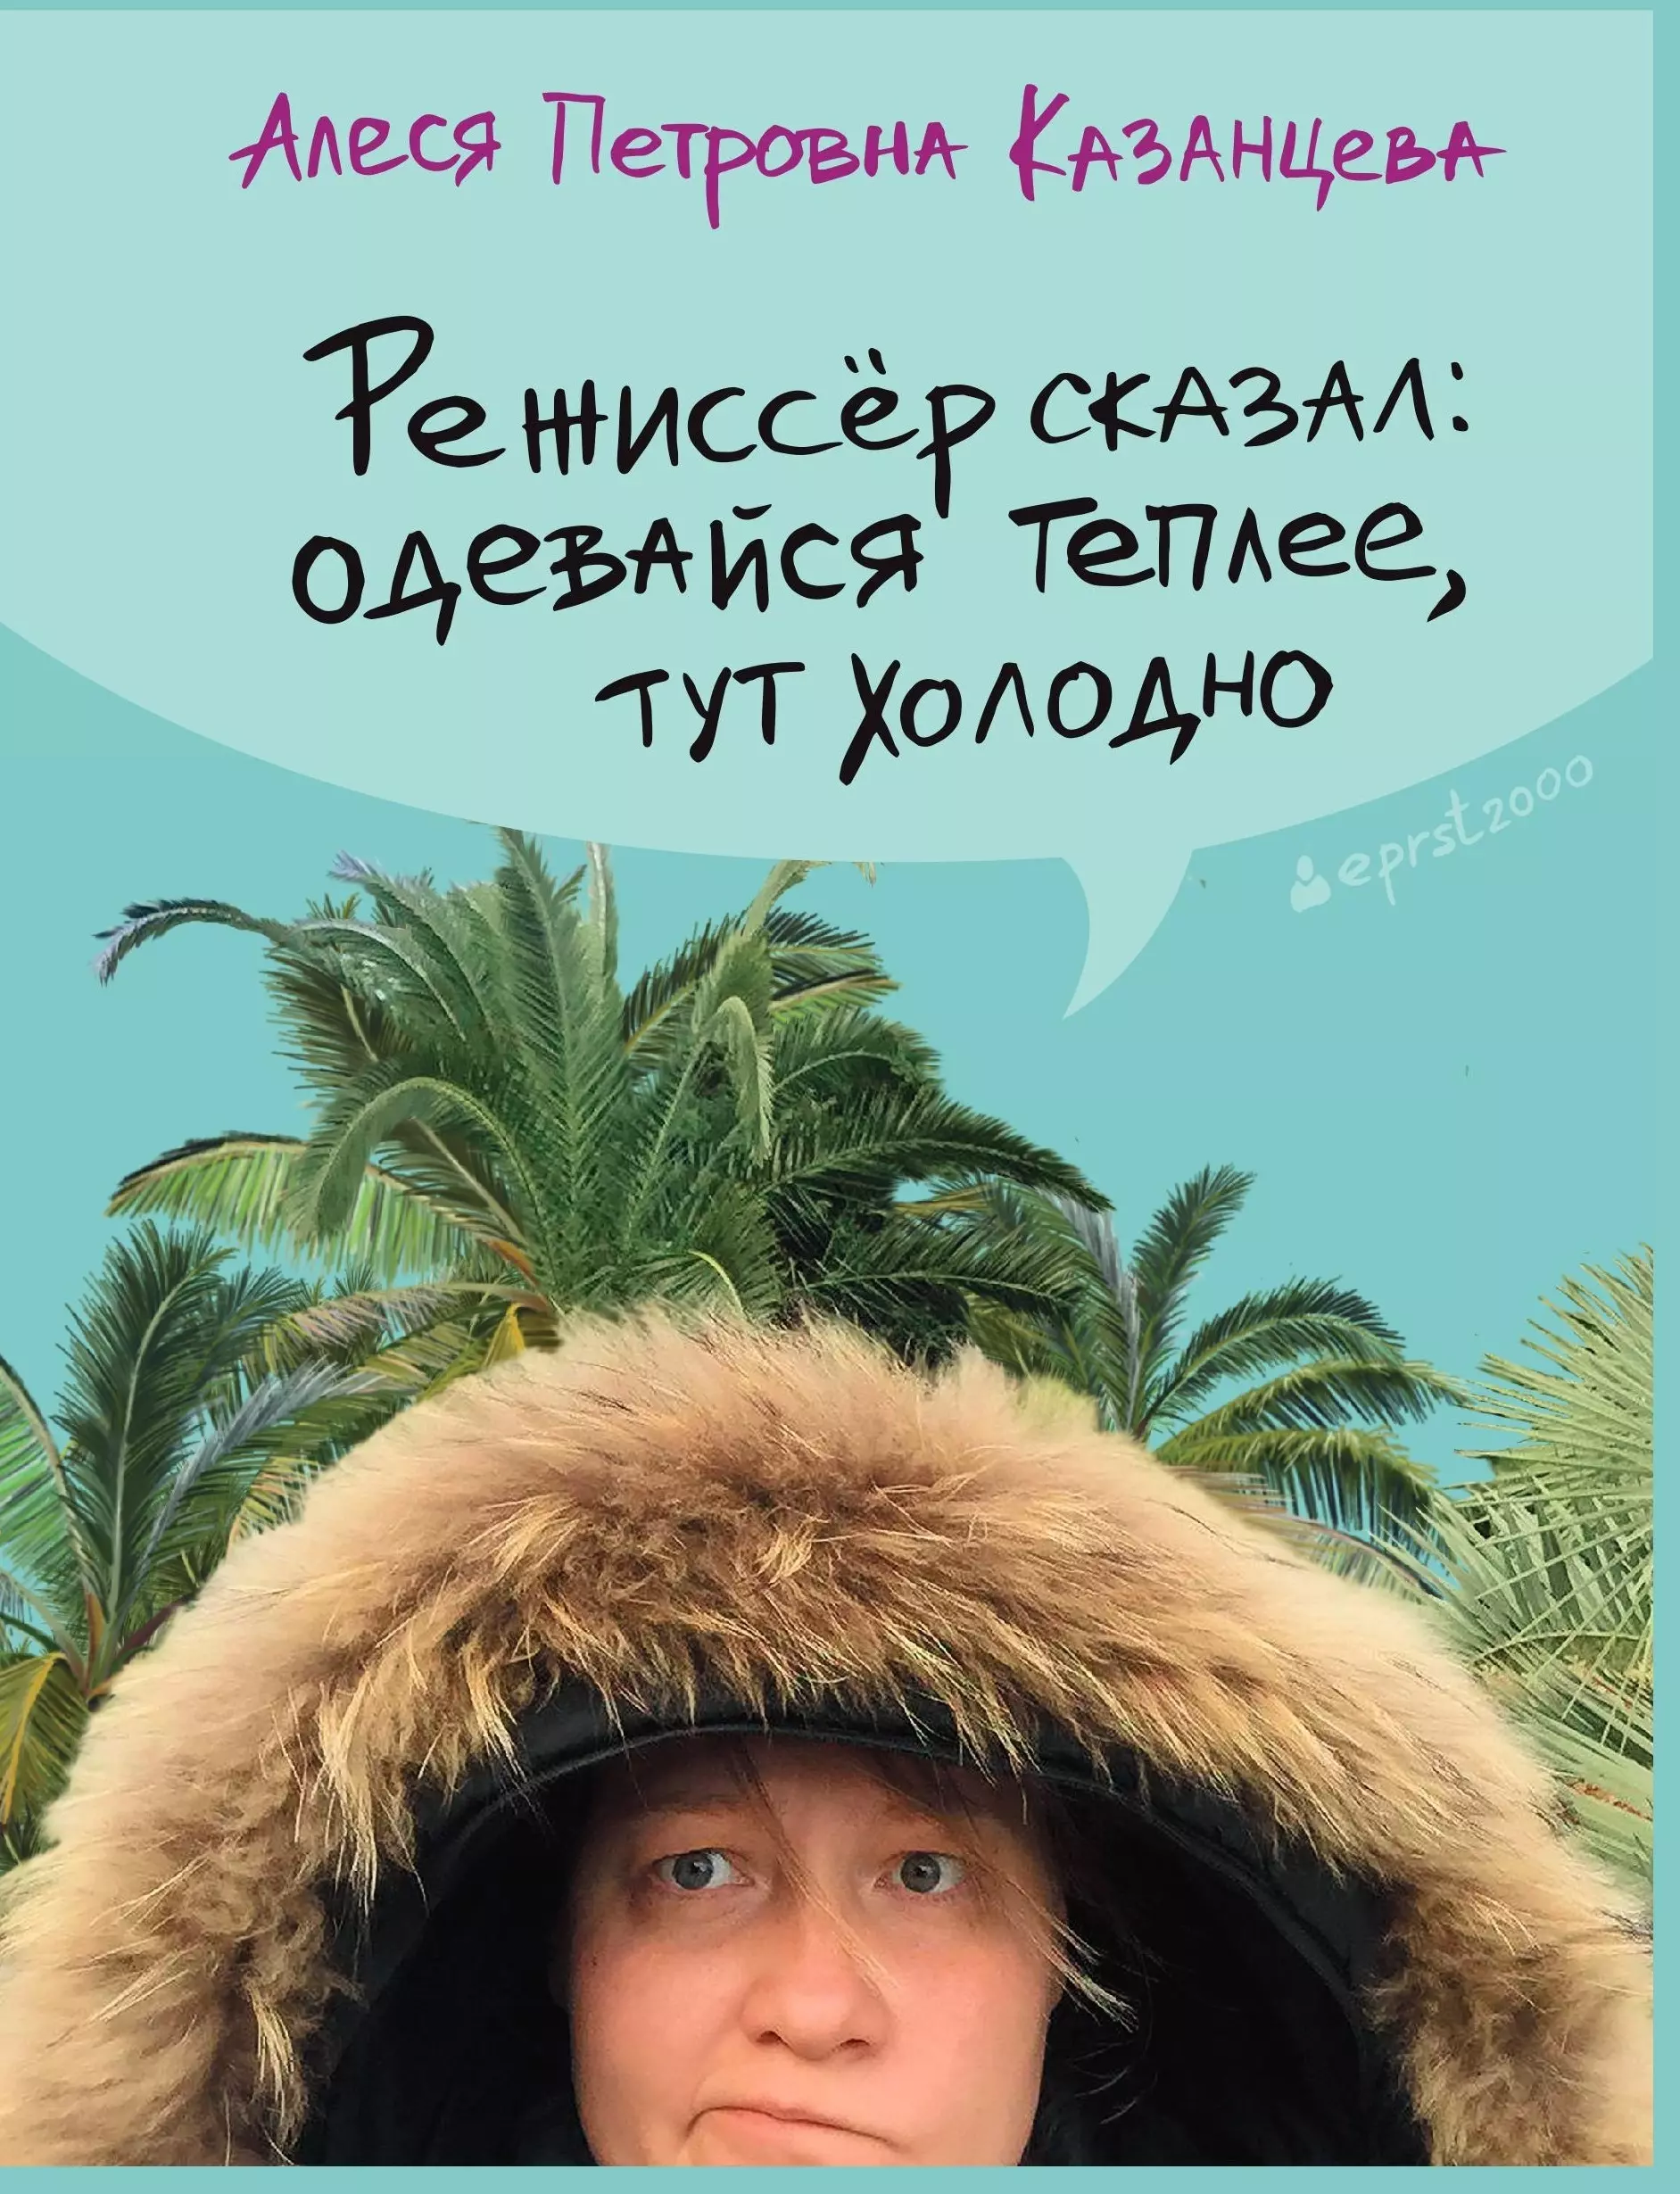 Казанцева Алеся Петровна - Режиссер сказал: одевайся теплее, тут холодно